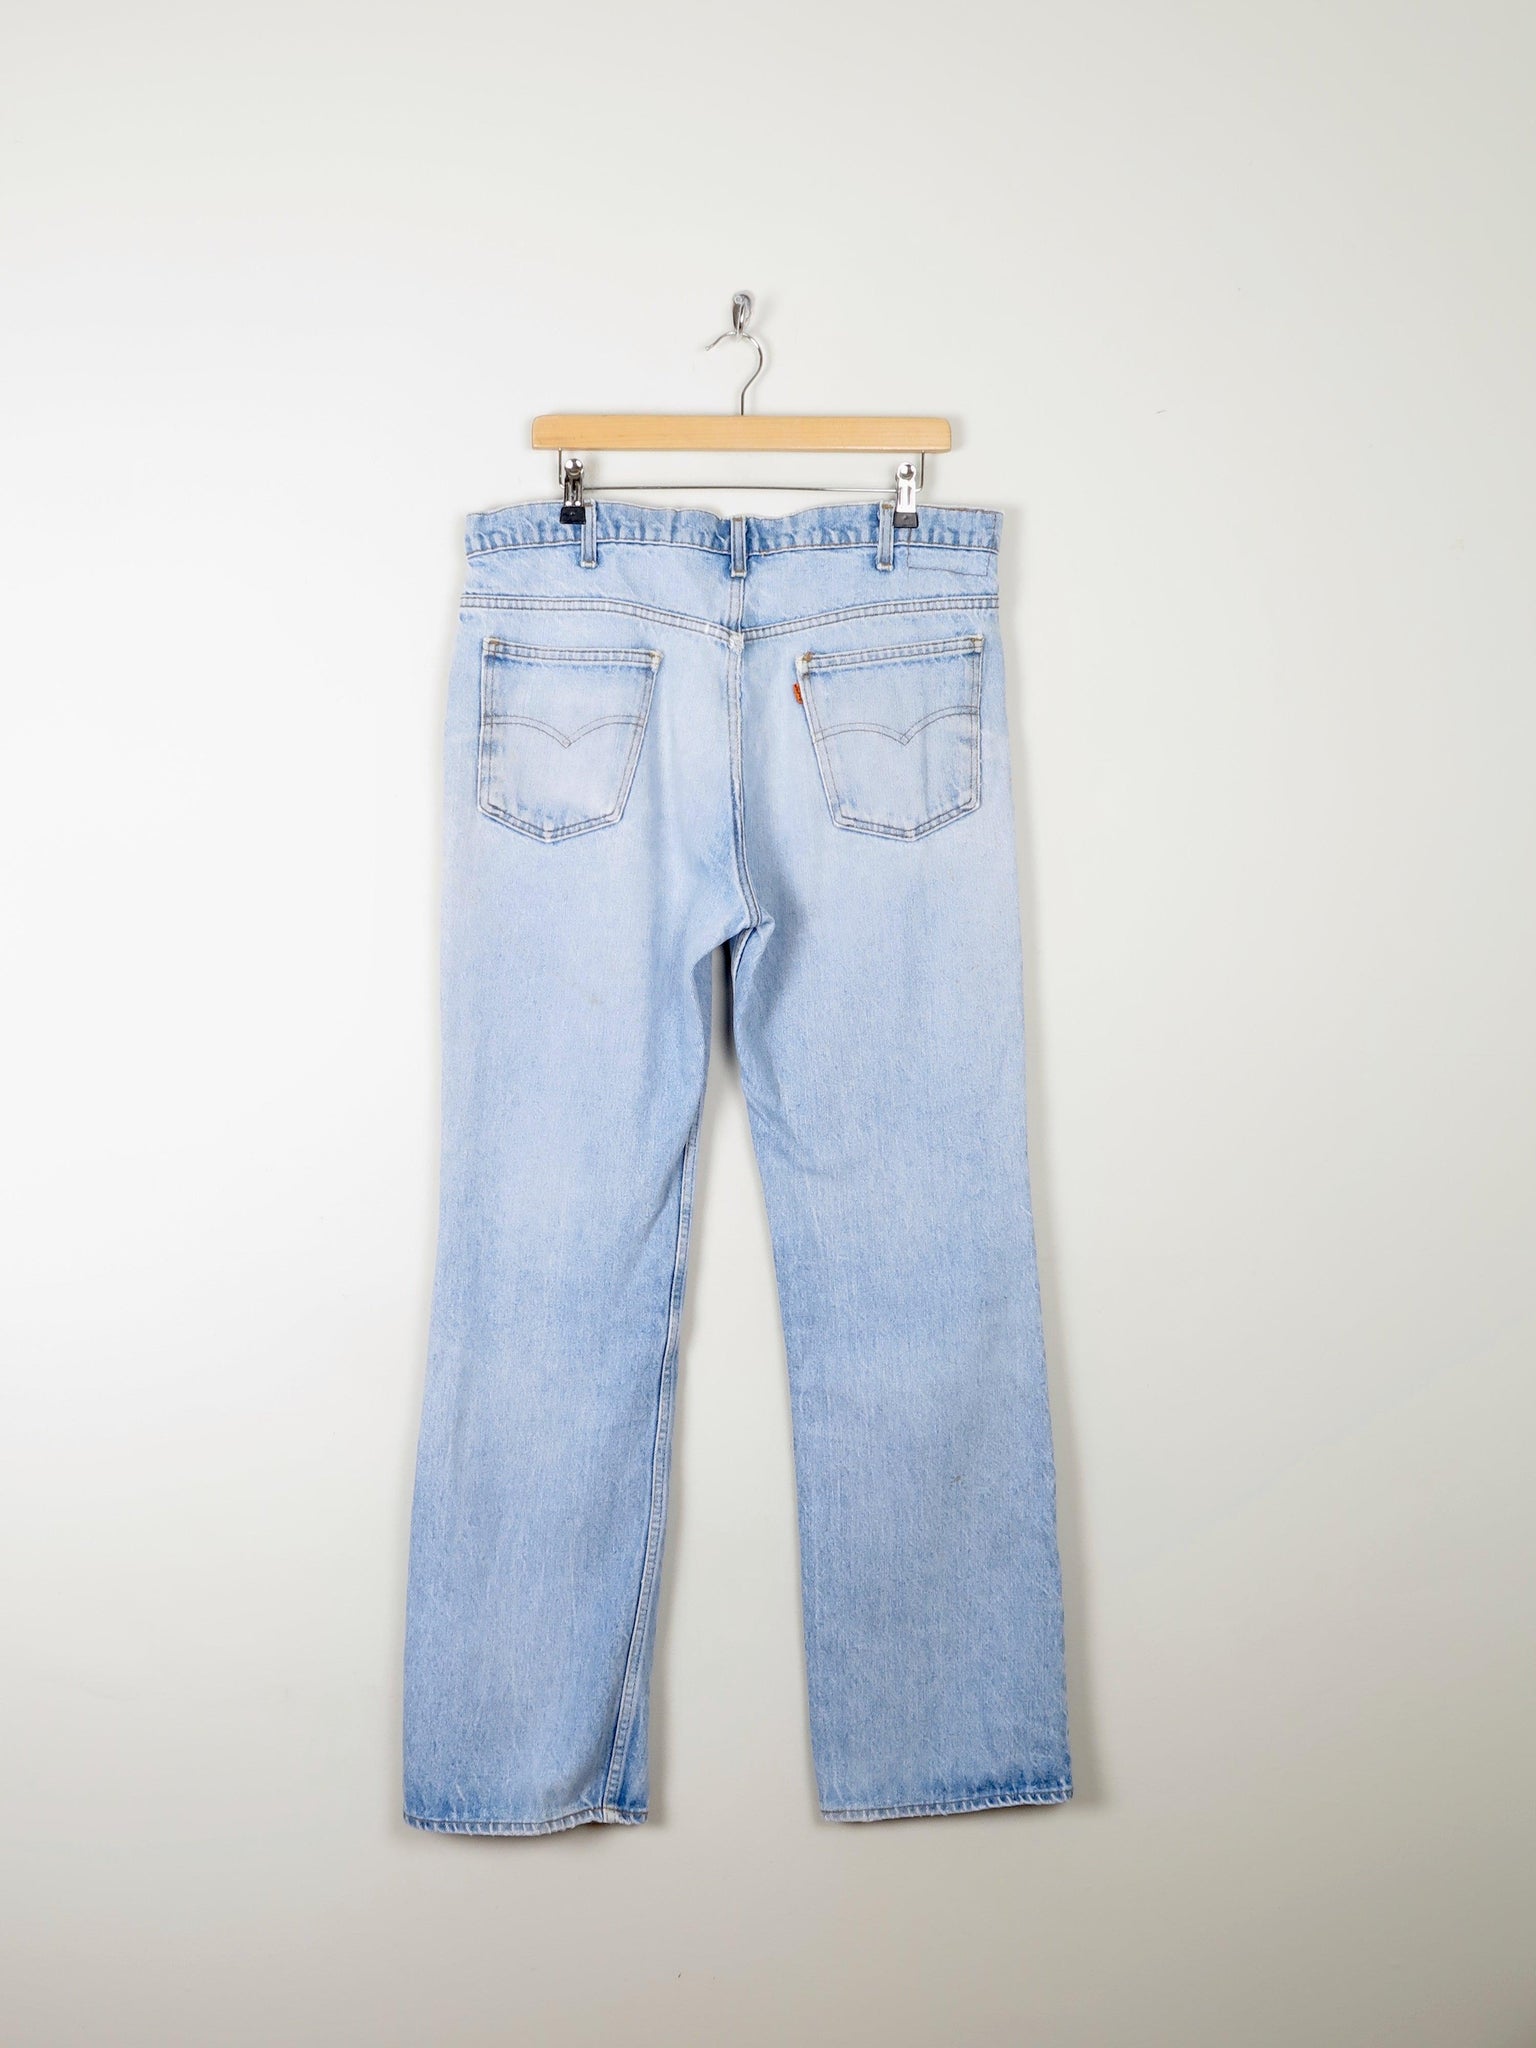 Vintage Blue Orange Tab Levis Jeans 36W 33L - The Harlequin